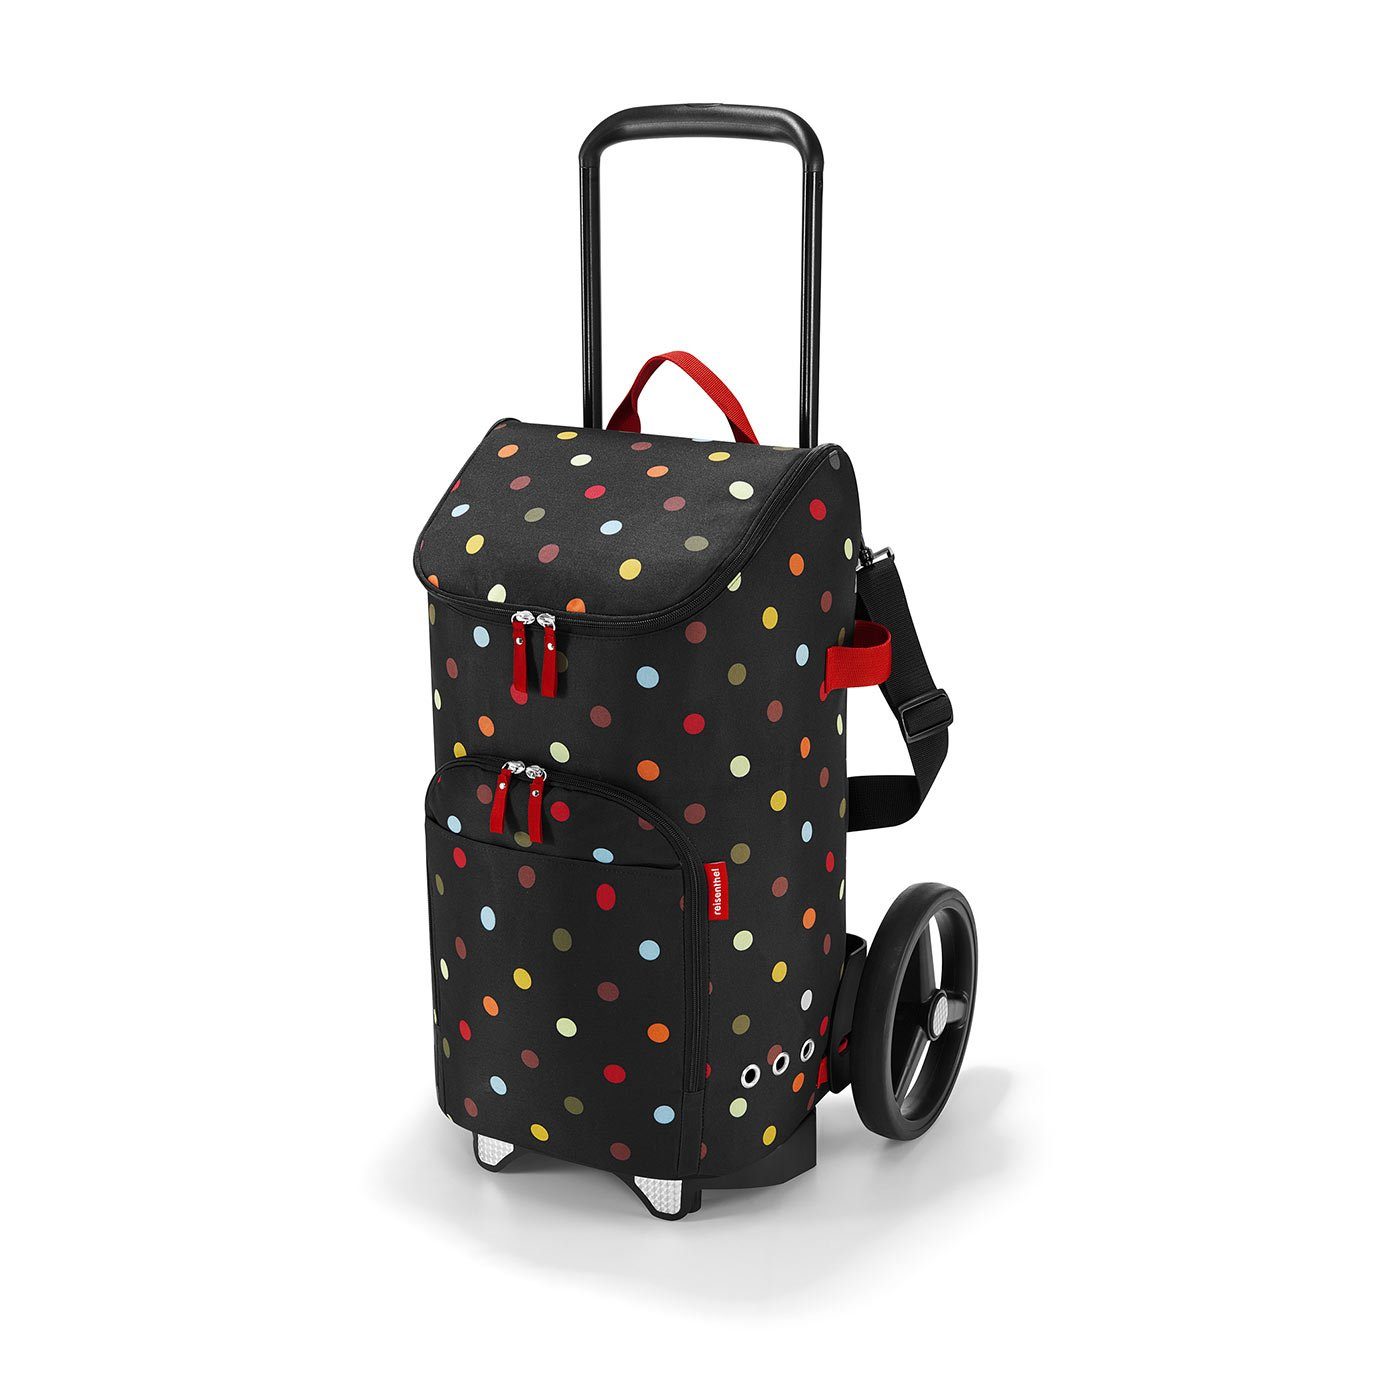 REISENTHEL® Einkaufstrolley citycruiser Rack + citycruiser Bag Set, moderner, robuster Einkaufstrolley aus Aluminium, leichtlaufende Rollen - große Einkaufstasche, 45 l